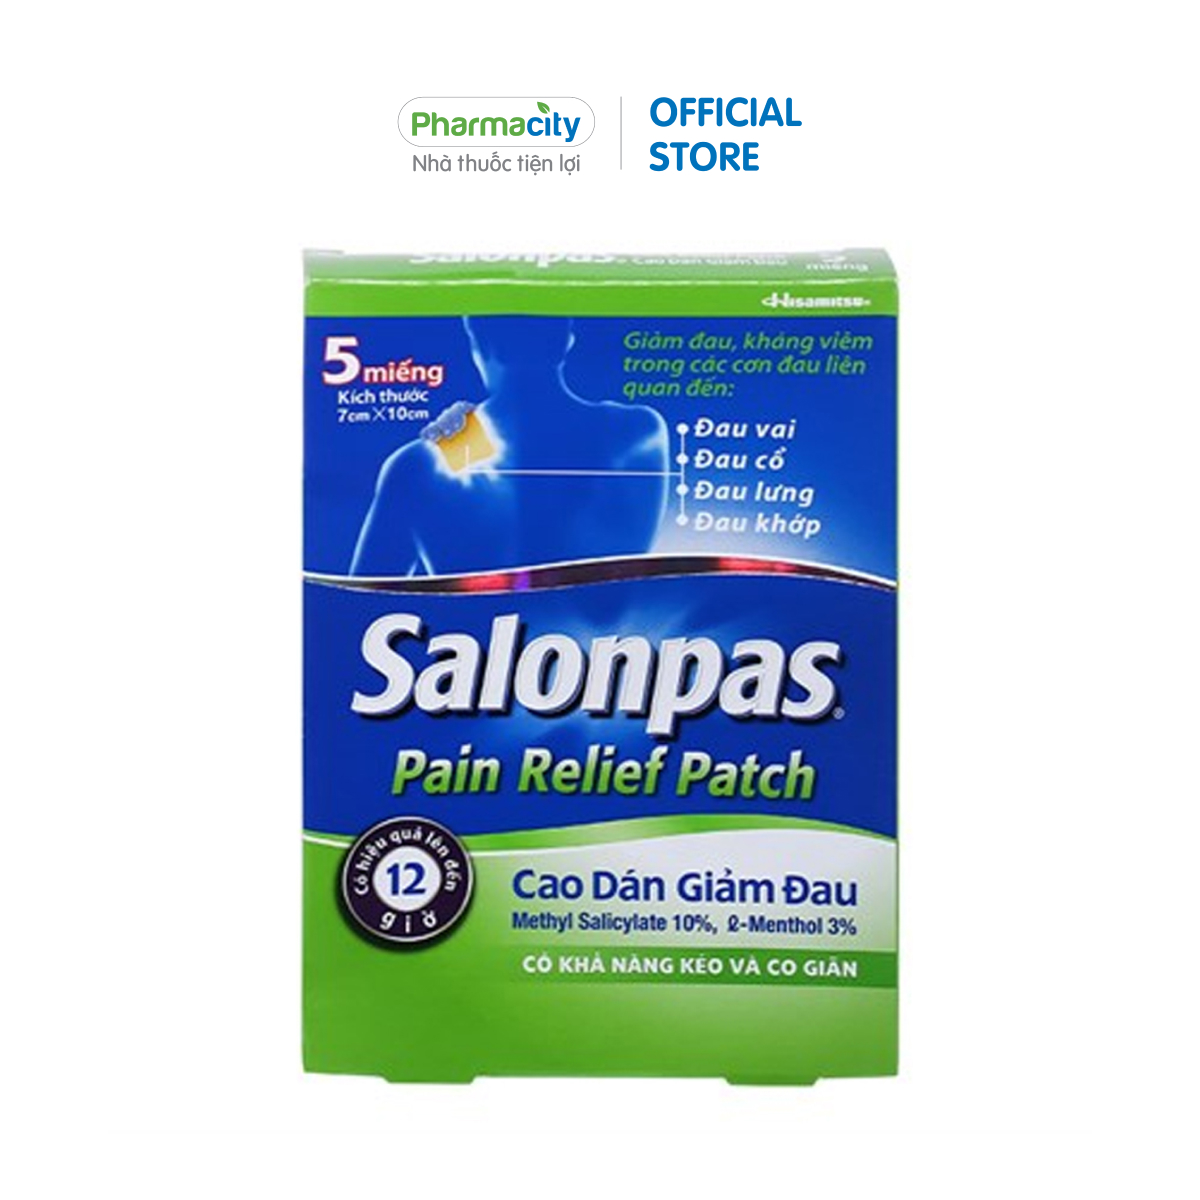 Miếng dán giảm đao Salonpas Pain Relief Patch (Hộp 5 miếng)